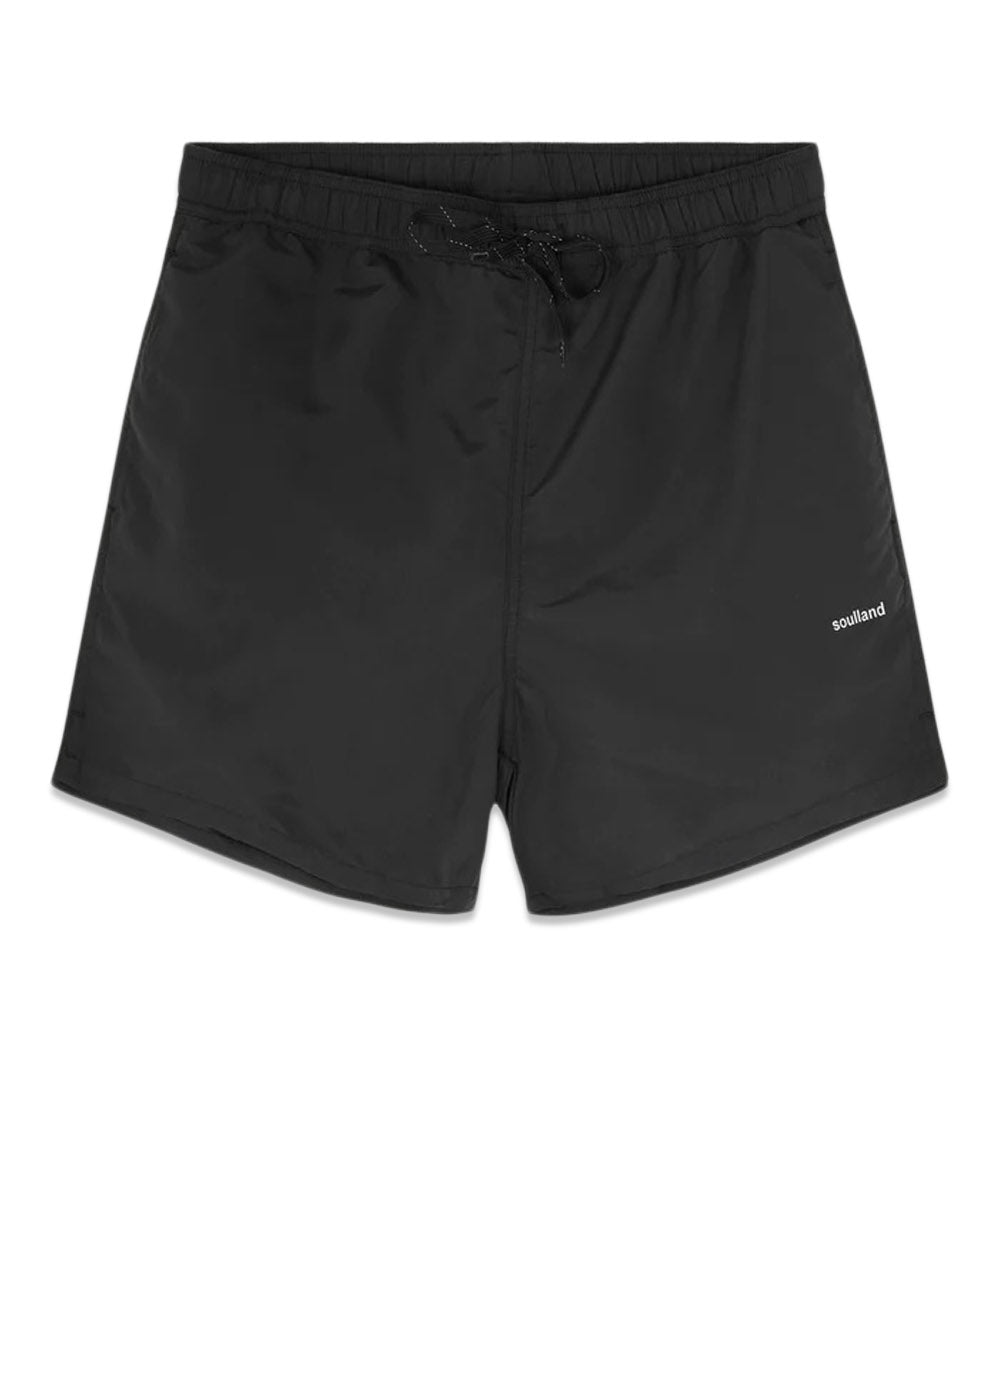 Soullands William swim shorts - Black. Køb shorts her.